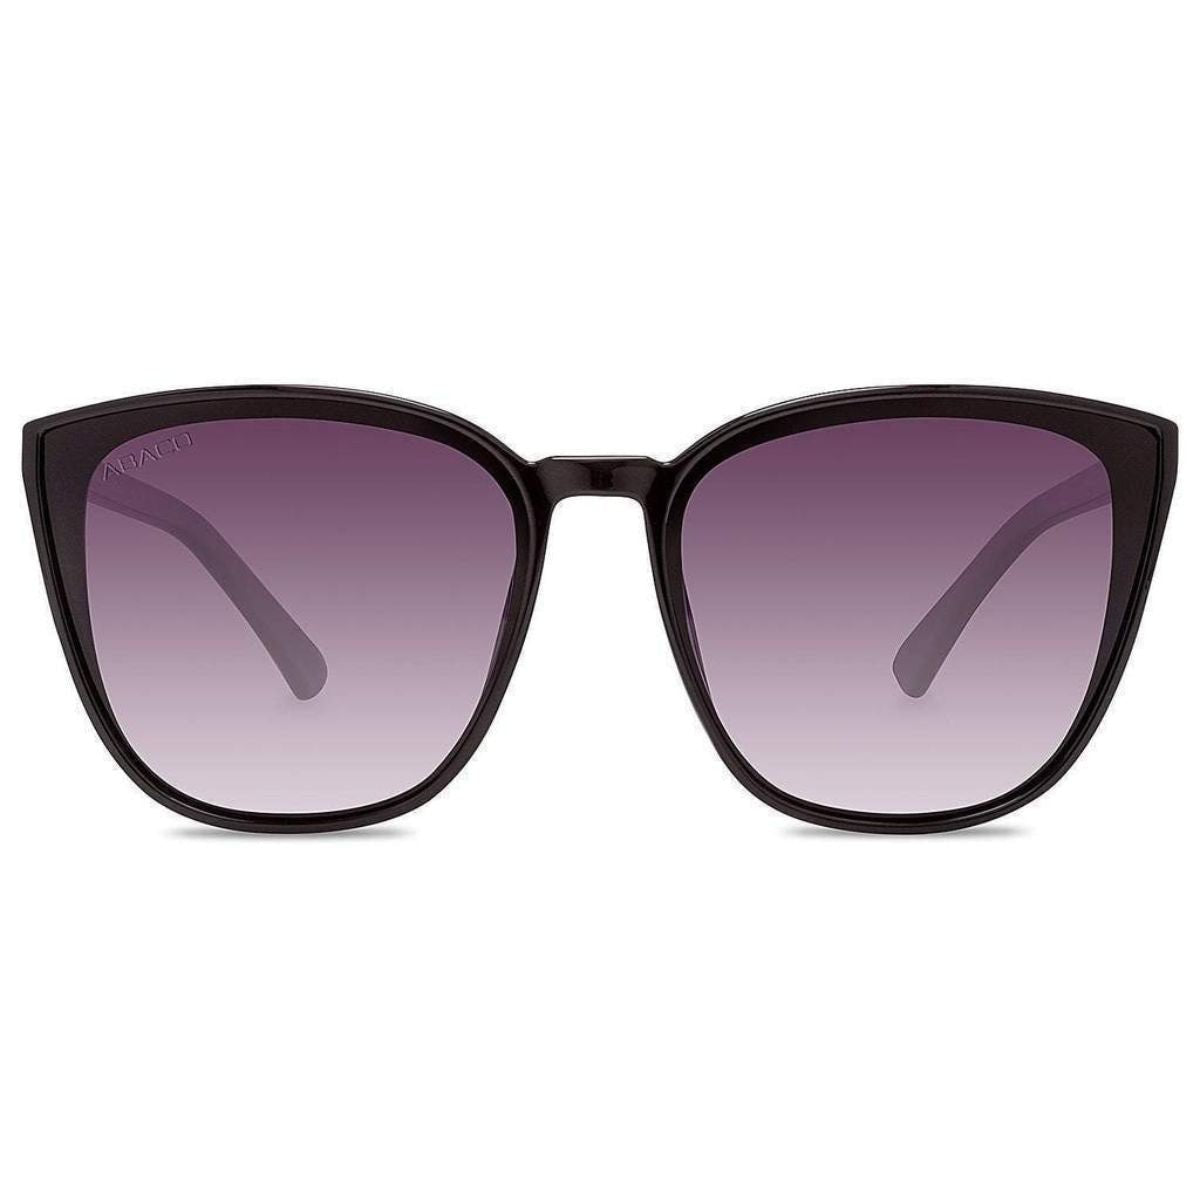 Abaco Chelsea Sunglasses in Gloss Black/Grey Gradient - BoardCo